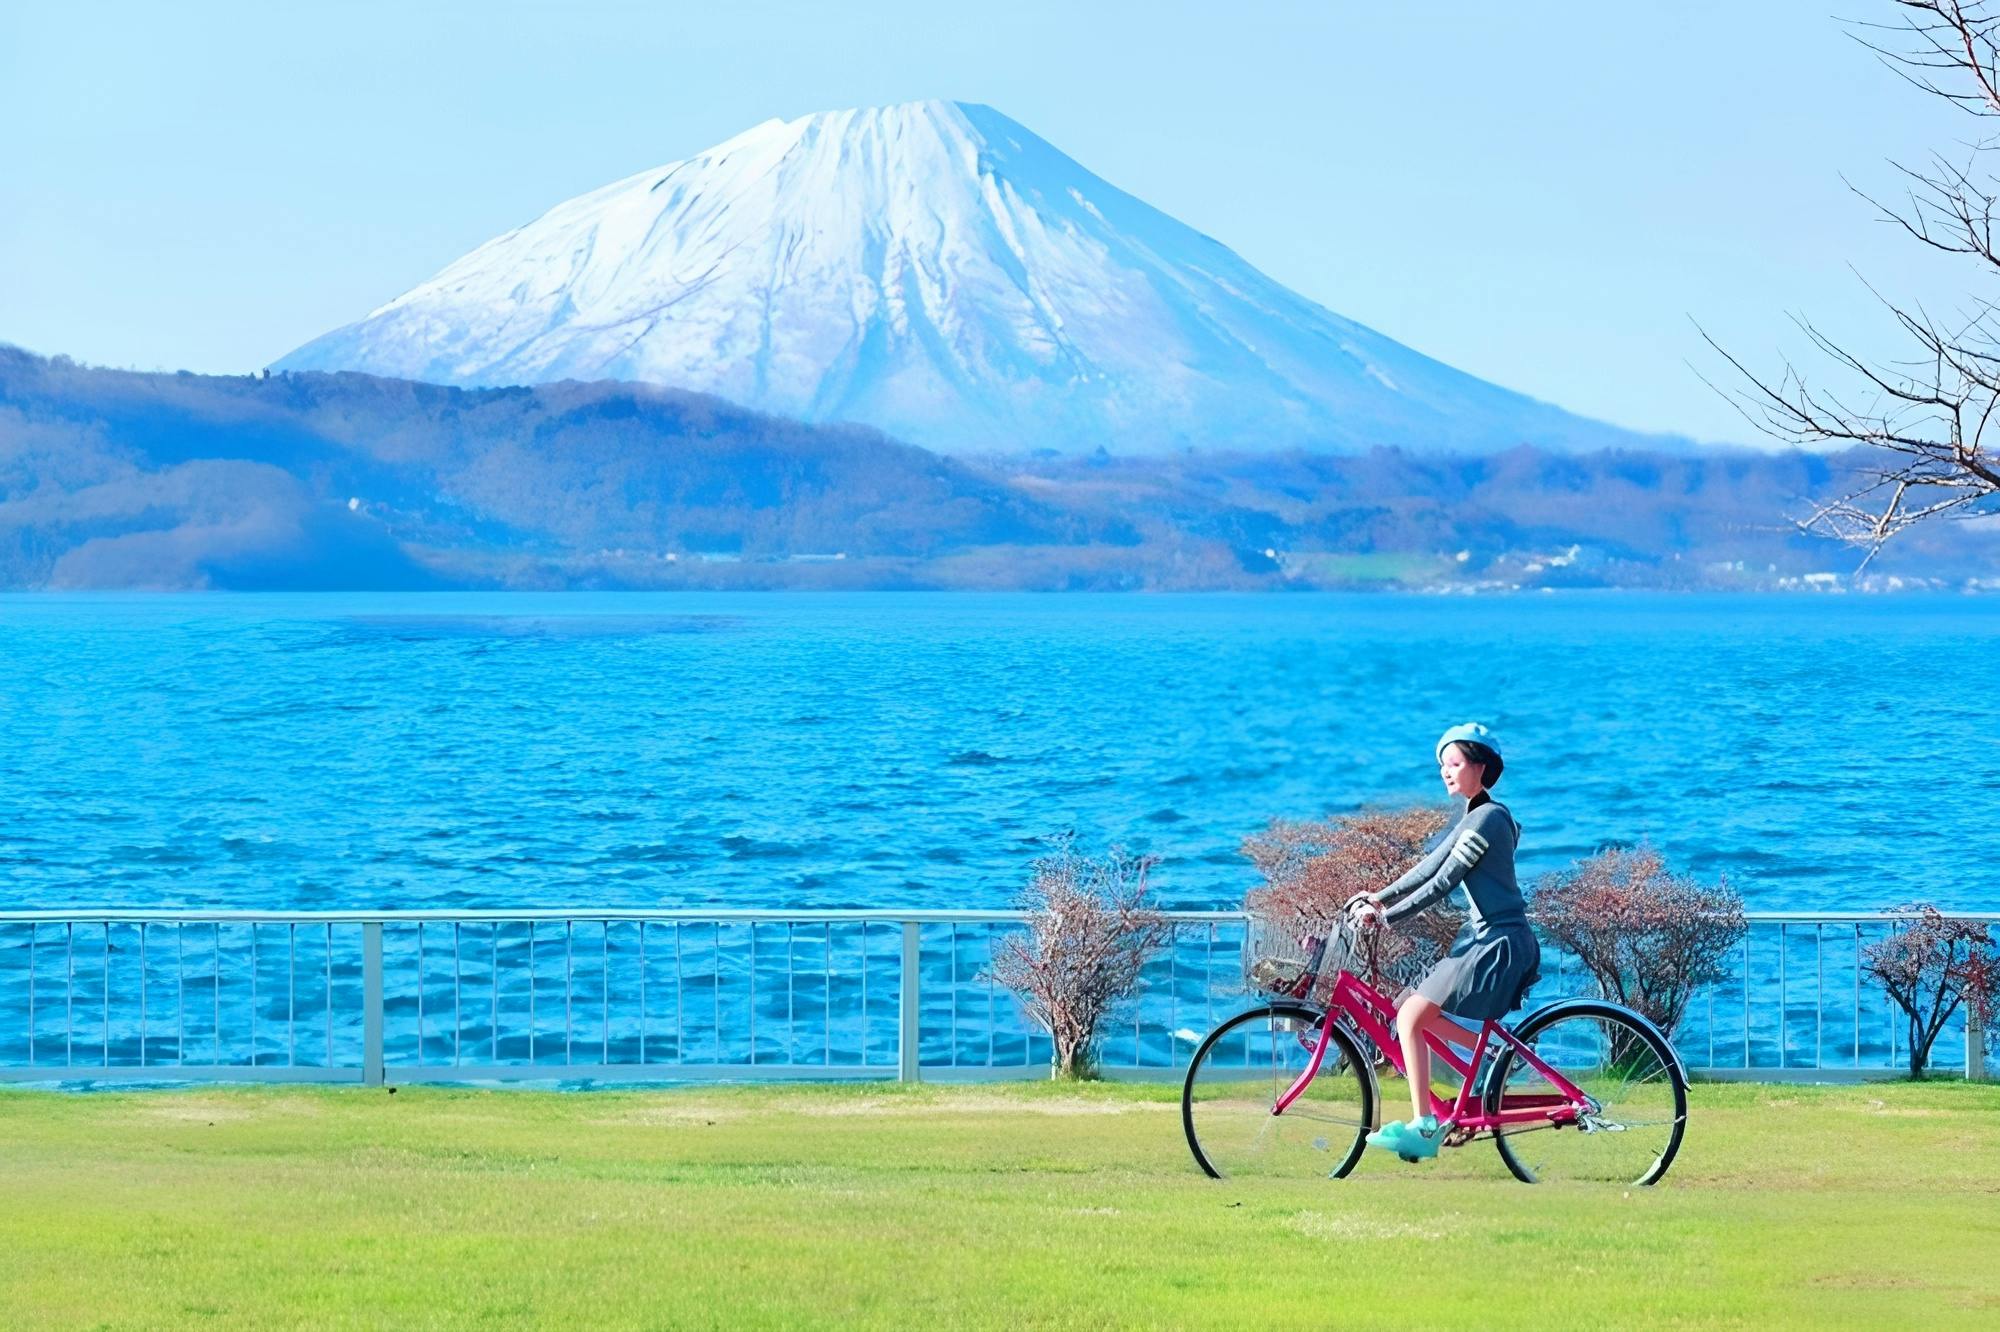 Noboribetsu, Lake Toya and Otaru Full-Day Tour in Hokkaido